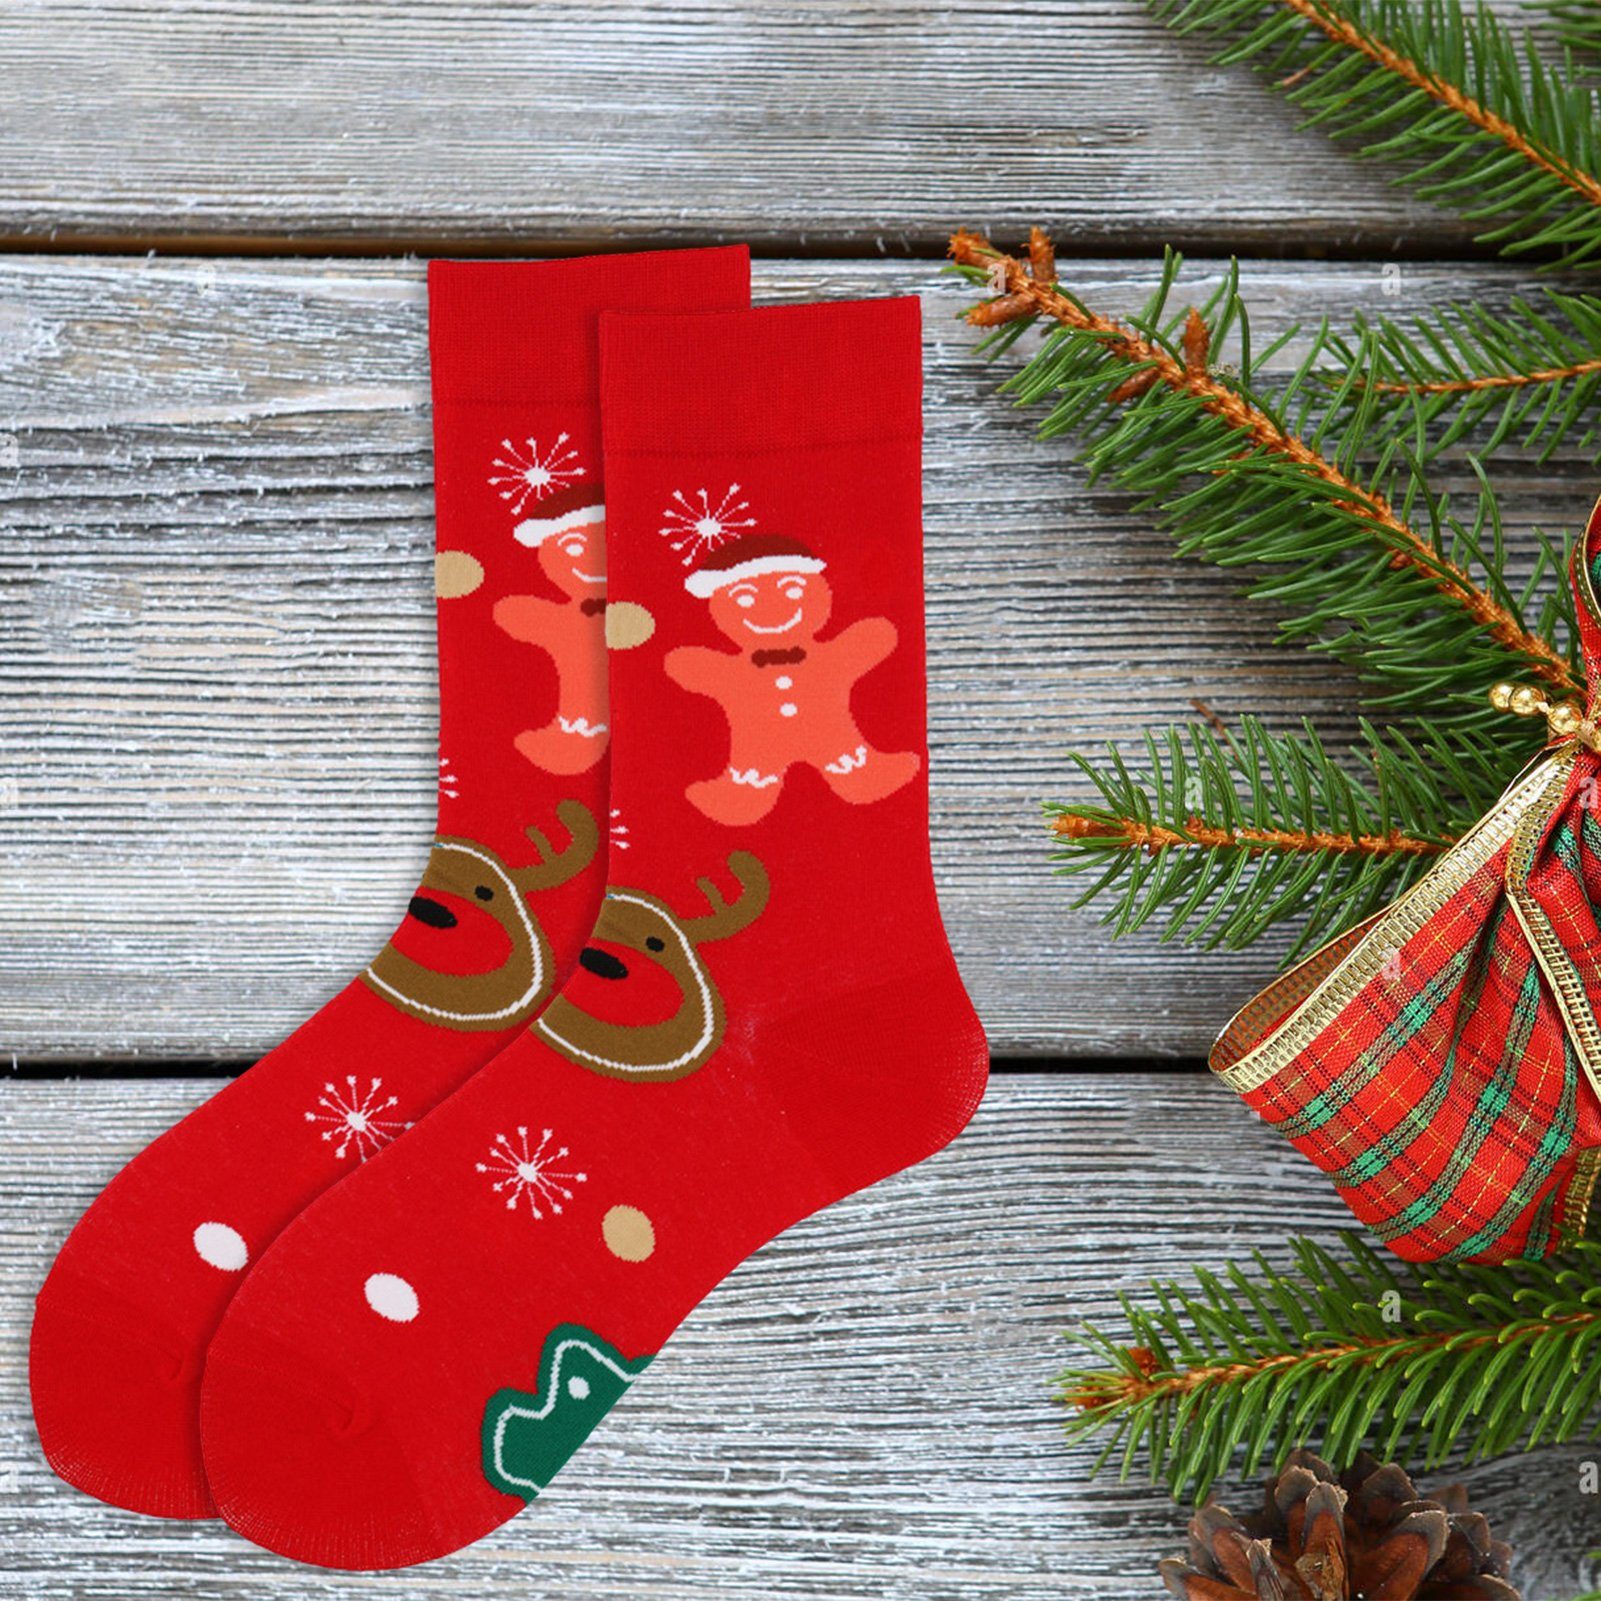 Rutaqian Socken 2 Paar Weihnachts Cartoon Socken,Weihnachten Baumwolle Socken (Bunter Aufdruck, Weihnachtsmann-Schneemann-Muster, Unisex Kuschelsocken Winter Socken Festliche Socken) Weich, Rutschfest,Elastisch, Vorgeschrumpft für Weihnachtsgeschenke Rot